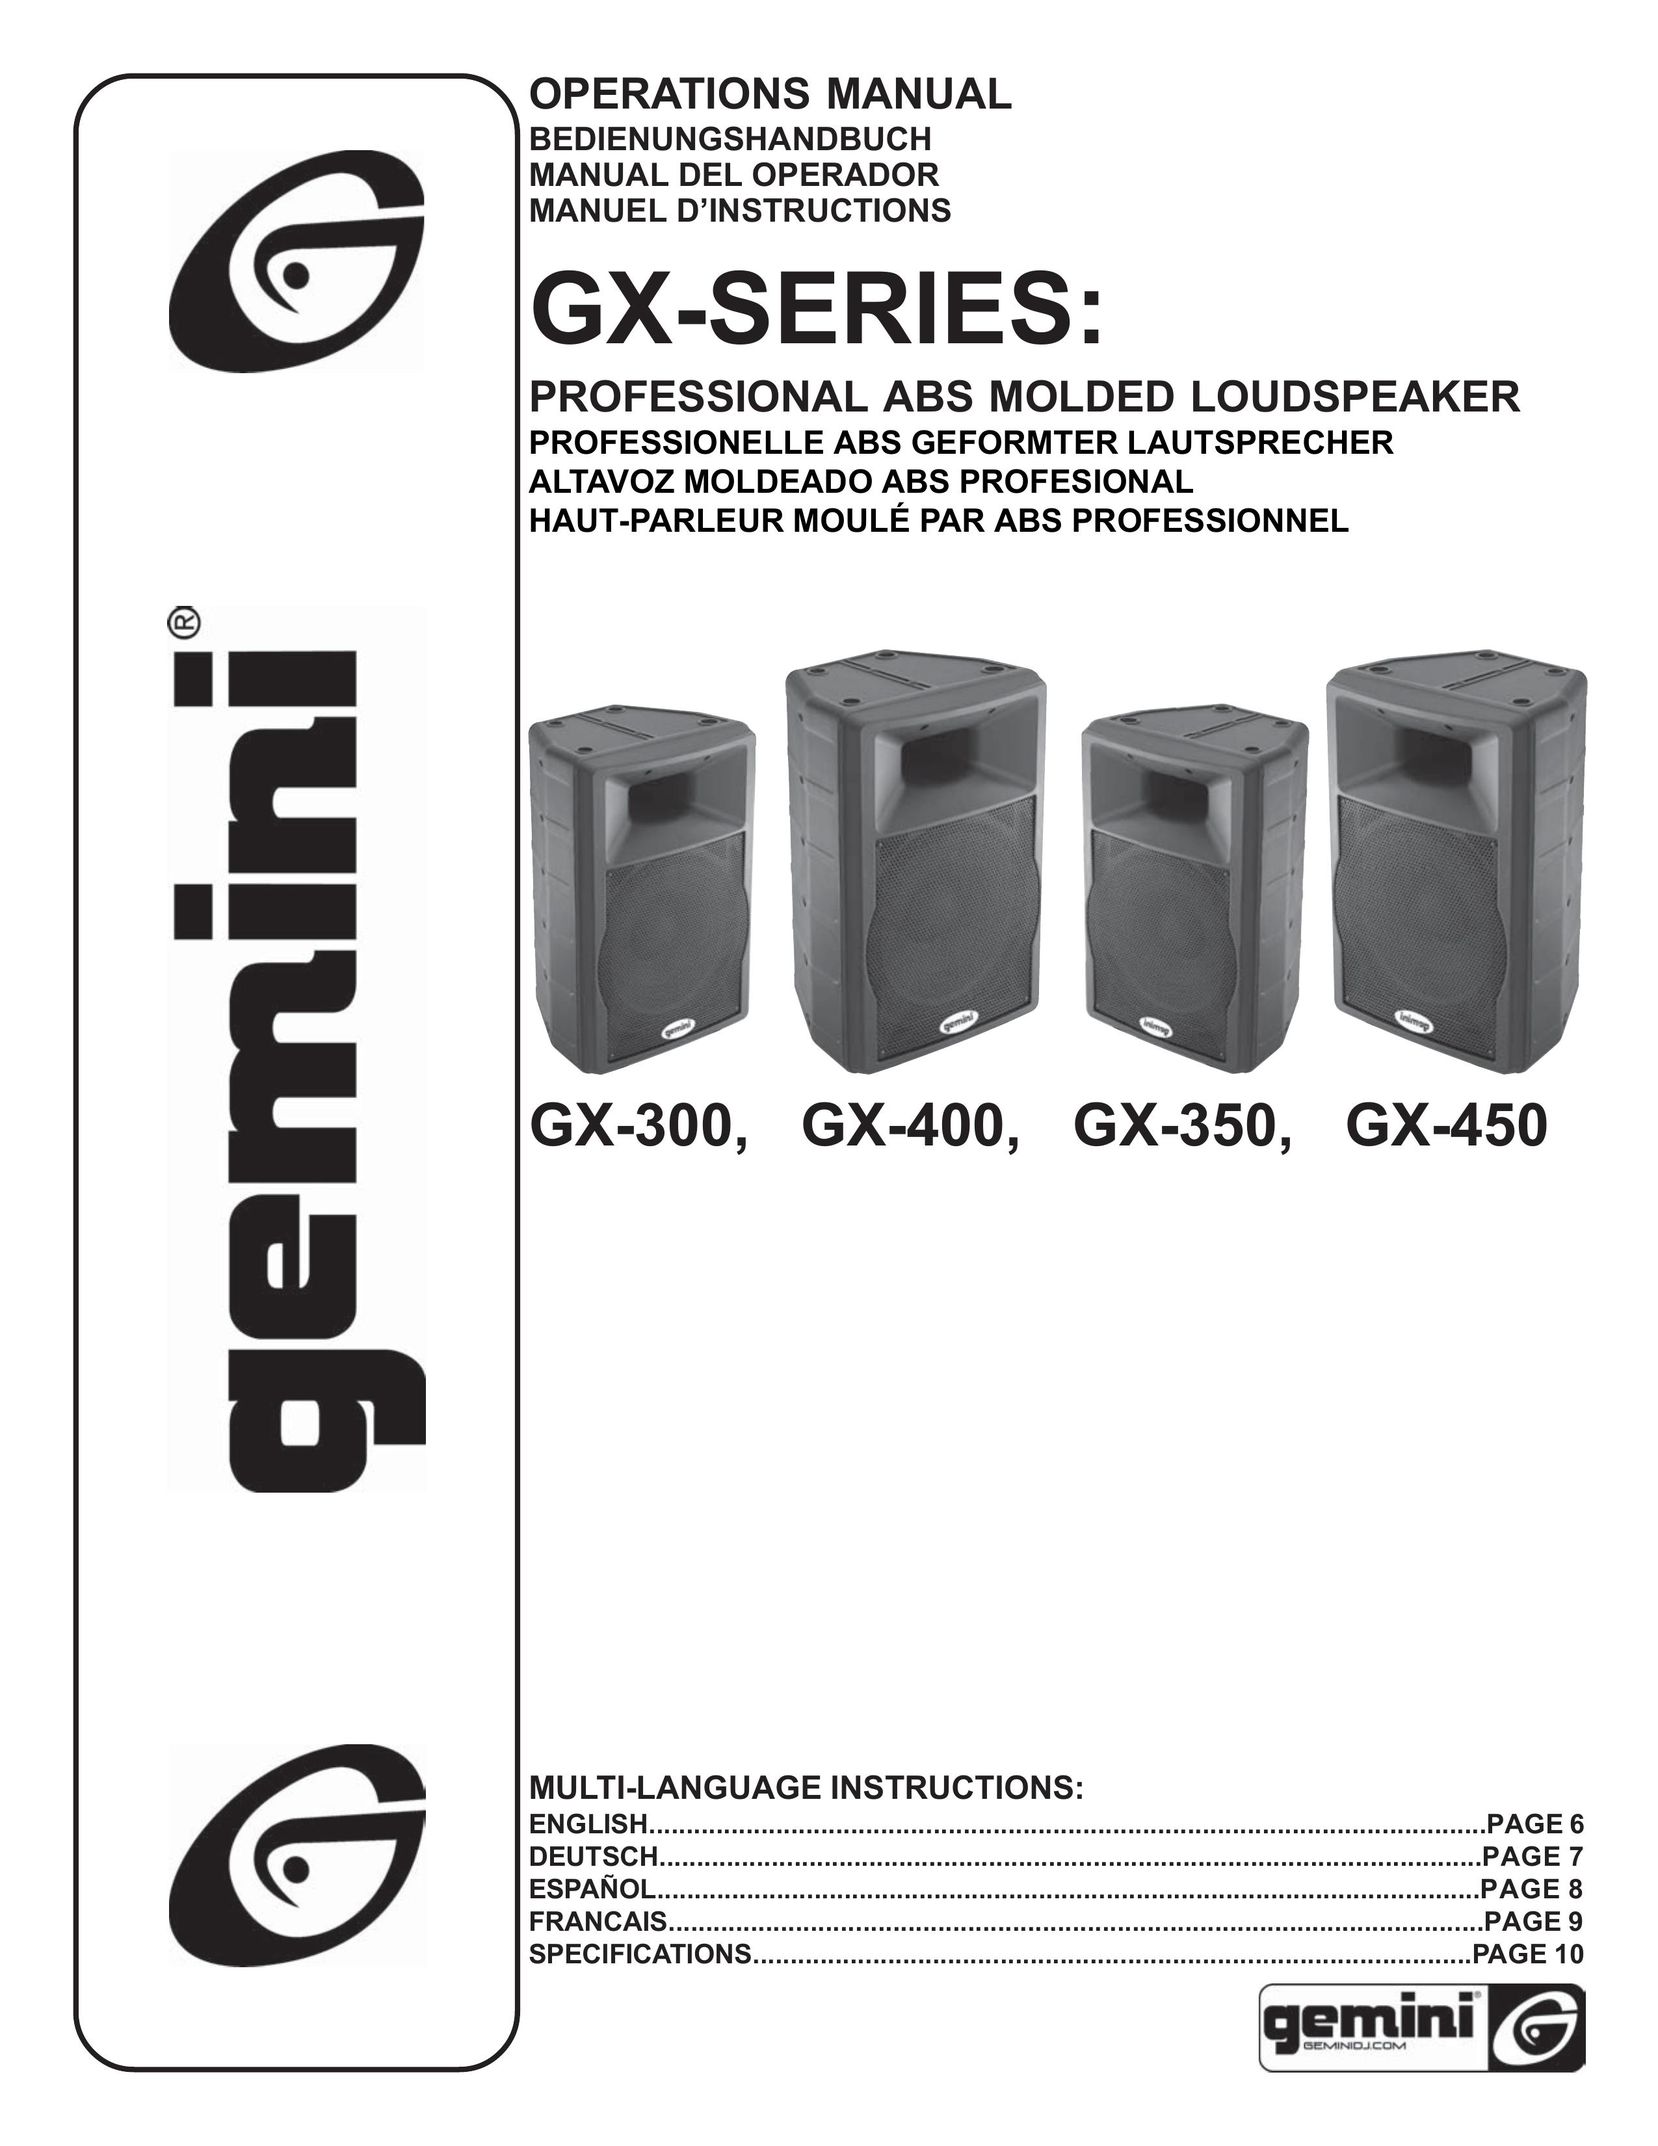 Gemini GX-450 Portable Speaker User Manual